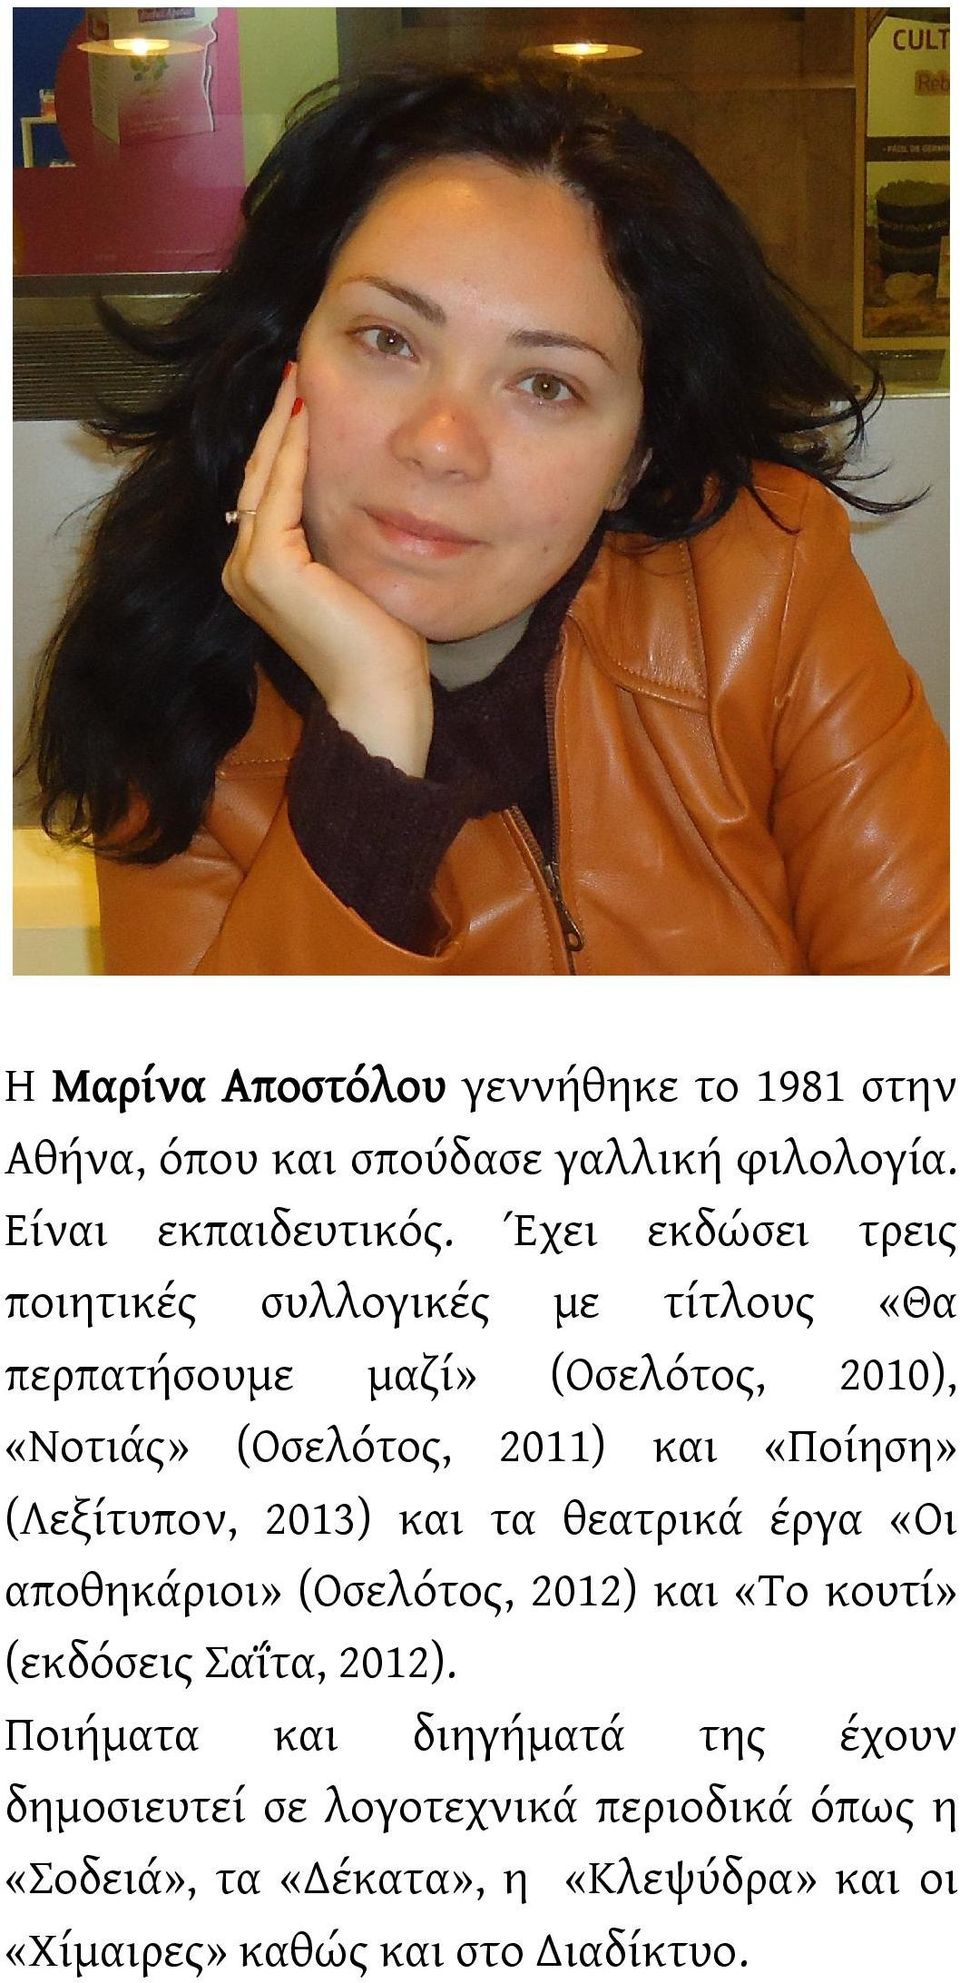 (Λεξίτυπον, 2013) και τα θεατρικά έργα «Οι αποθηκάριοι» (Οσελότος, 2012) και «Το κουτί» (εκδόσεις Σαΐτα, 2012).